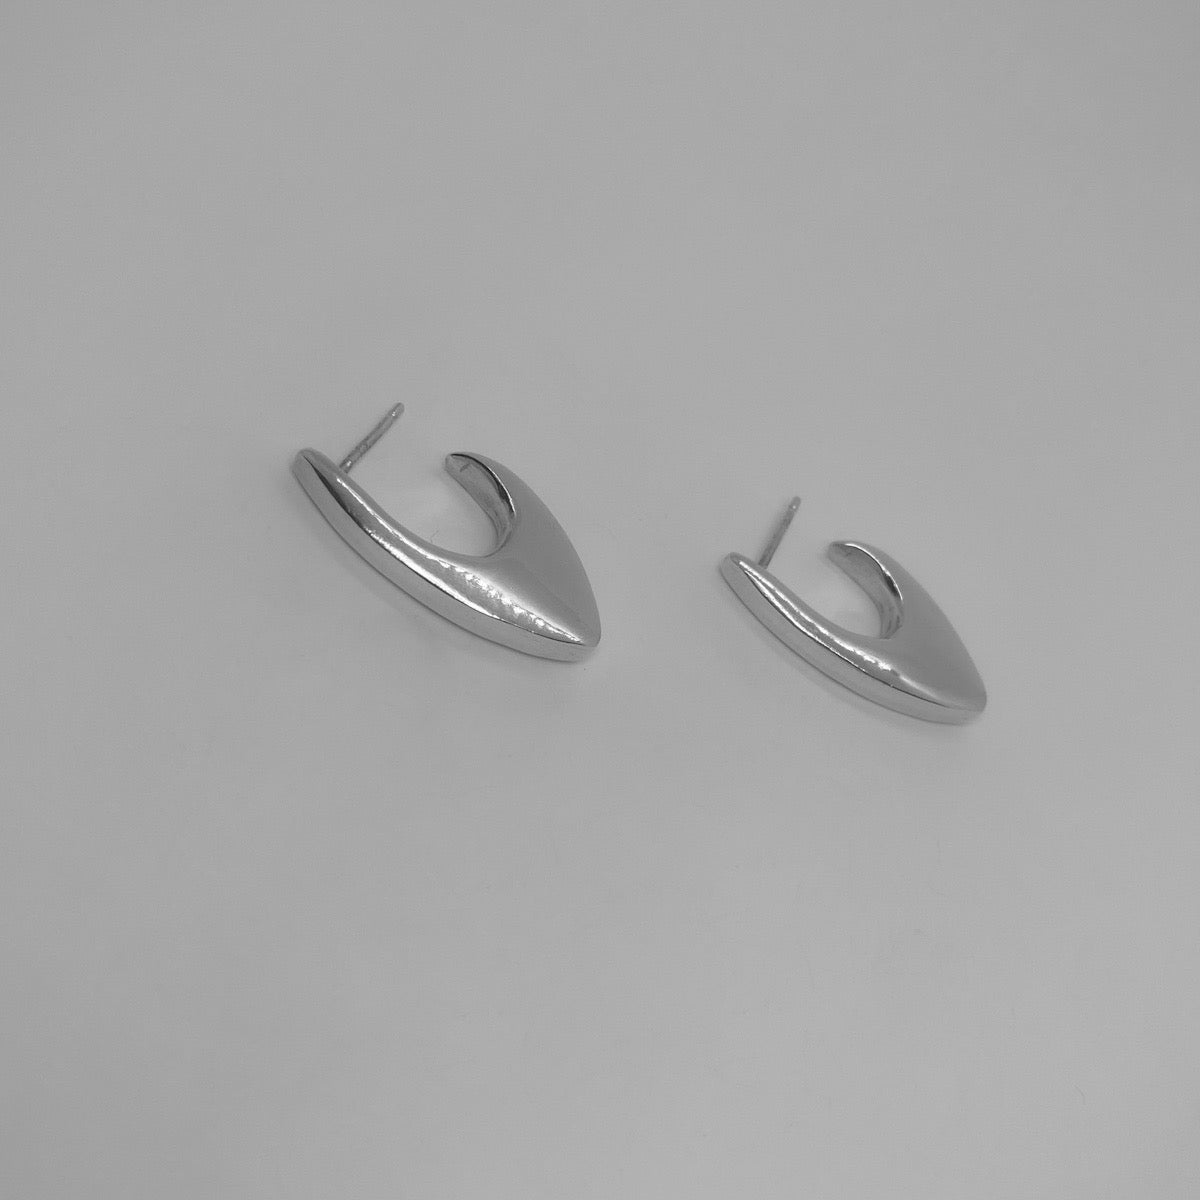 Handmade earrings made of 925 silver